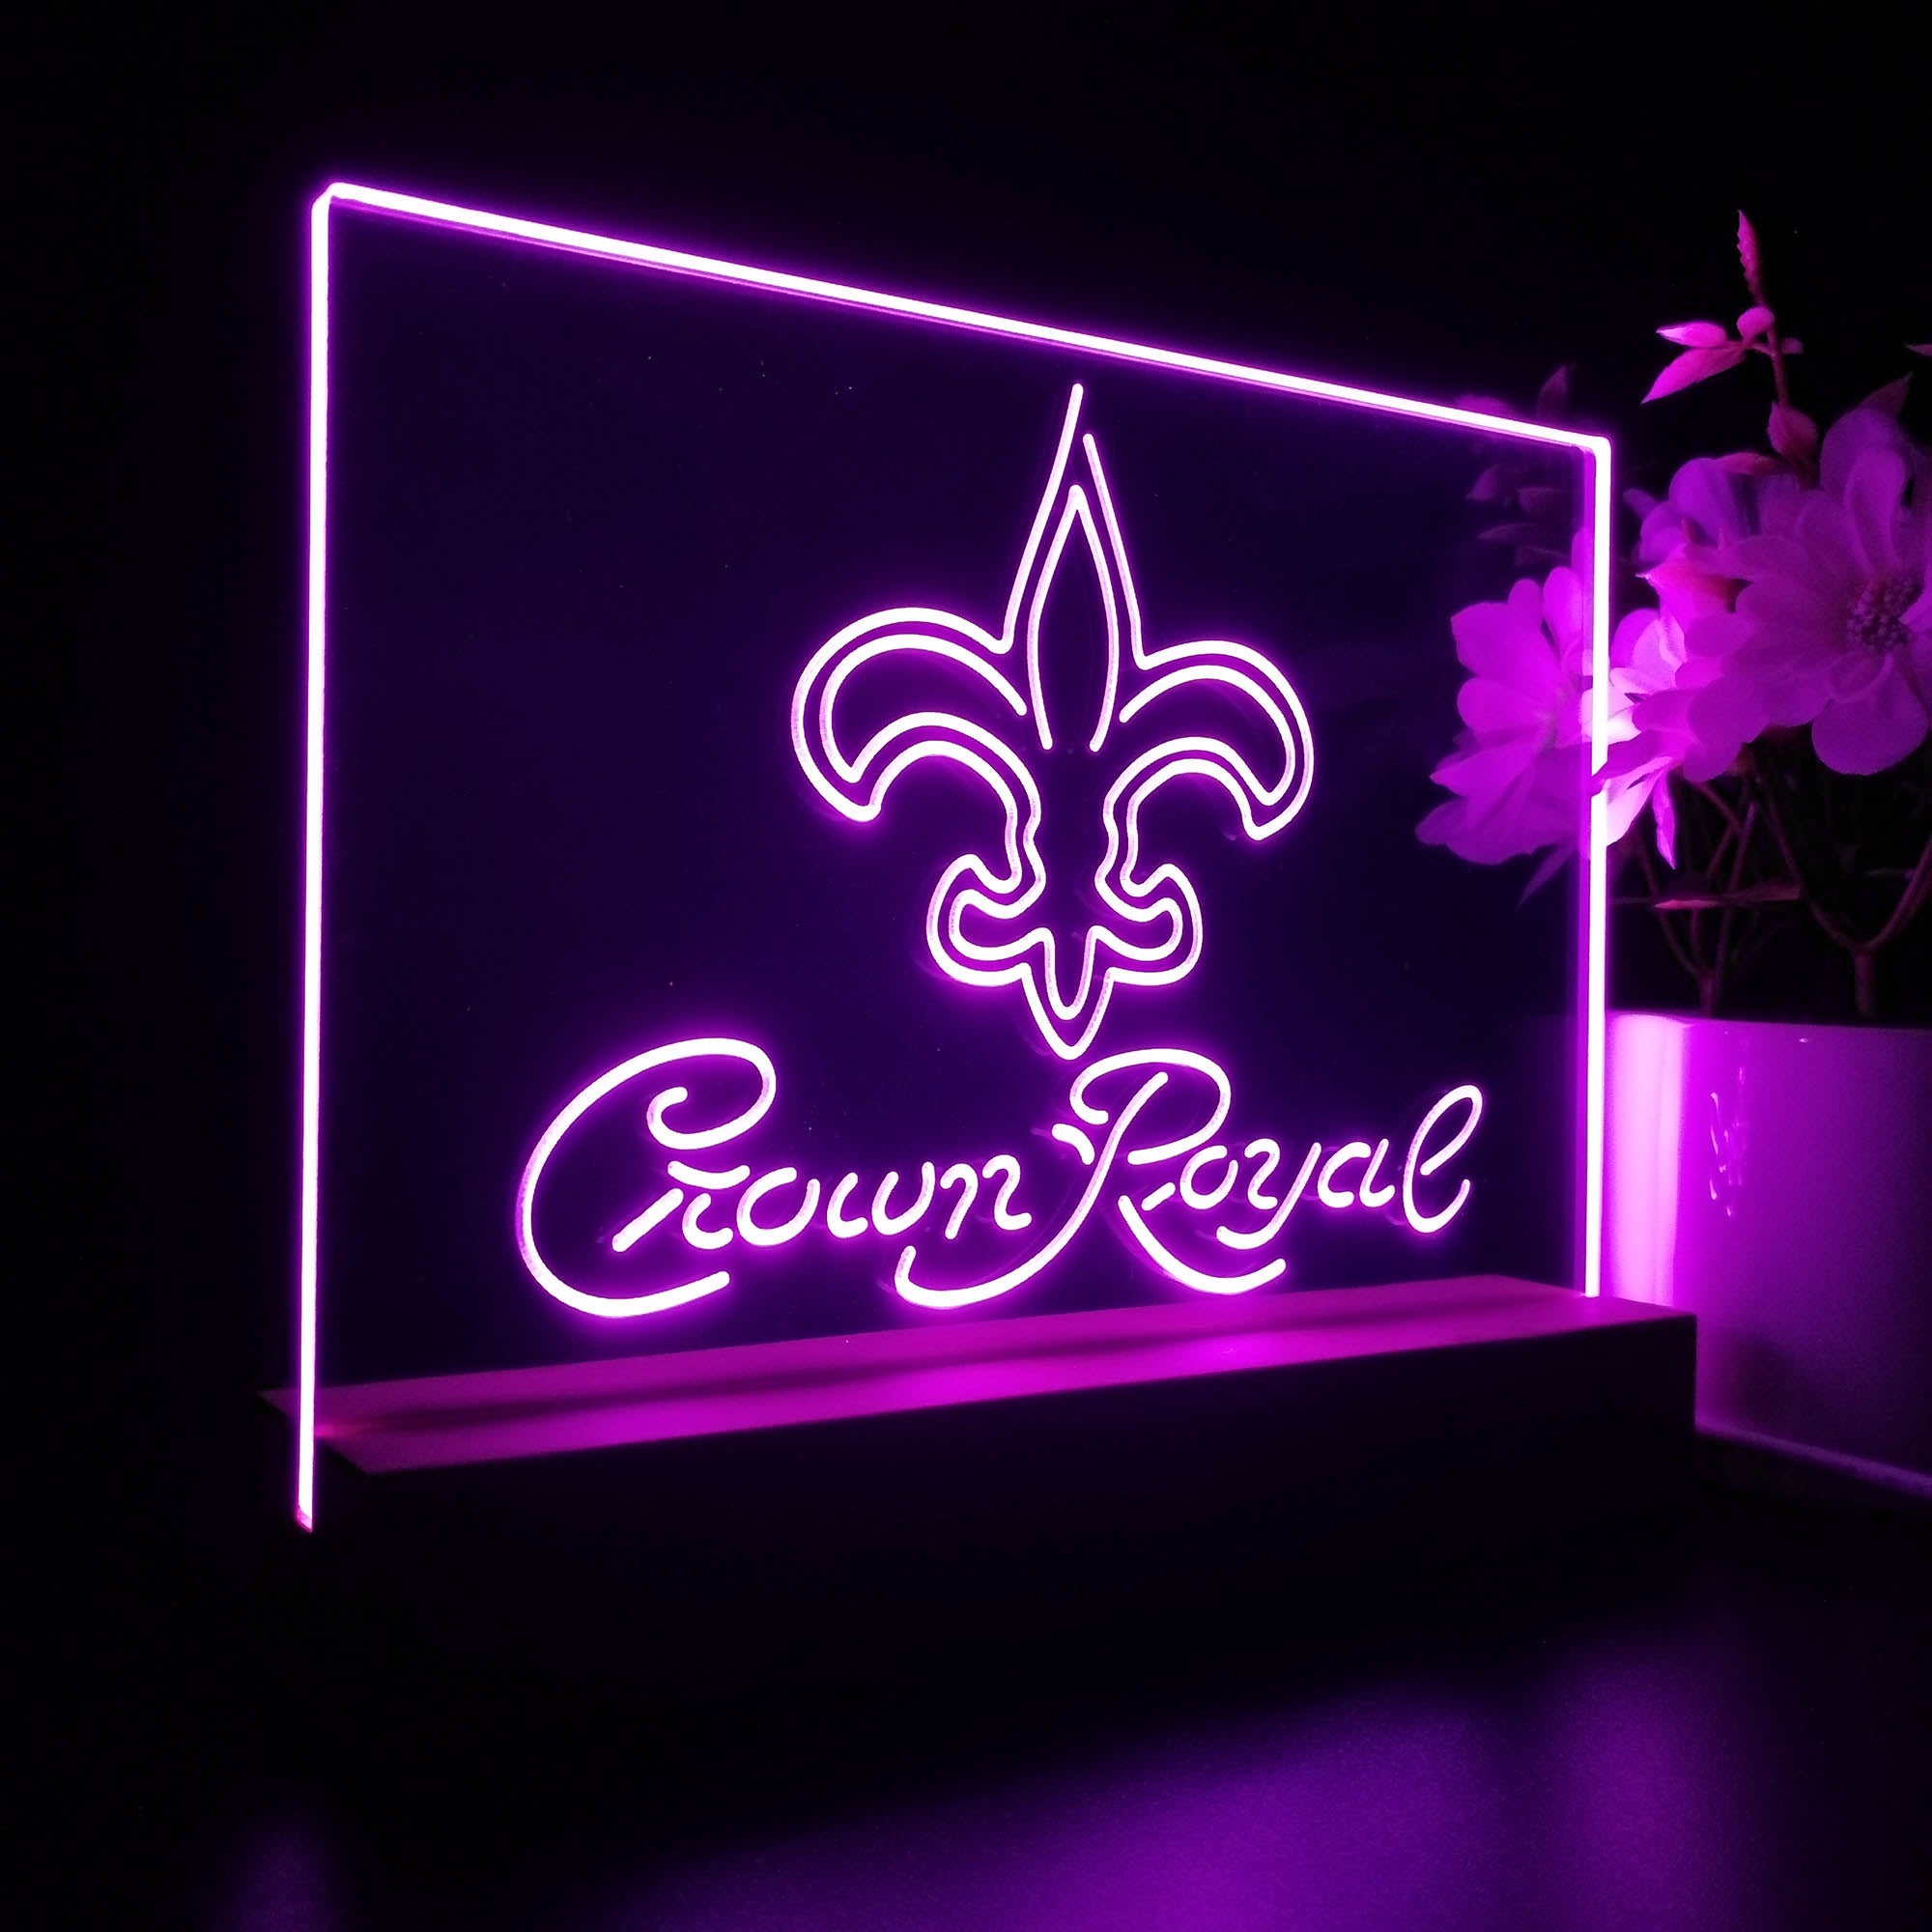 Crown Royal Bar New Orleans Saints Est. 1967 Night Light Pub Bar Lamp